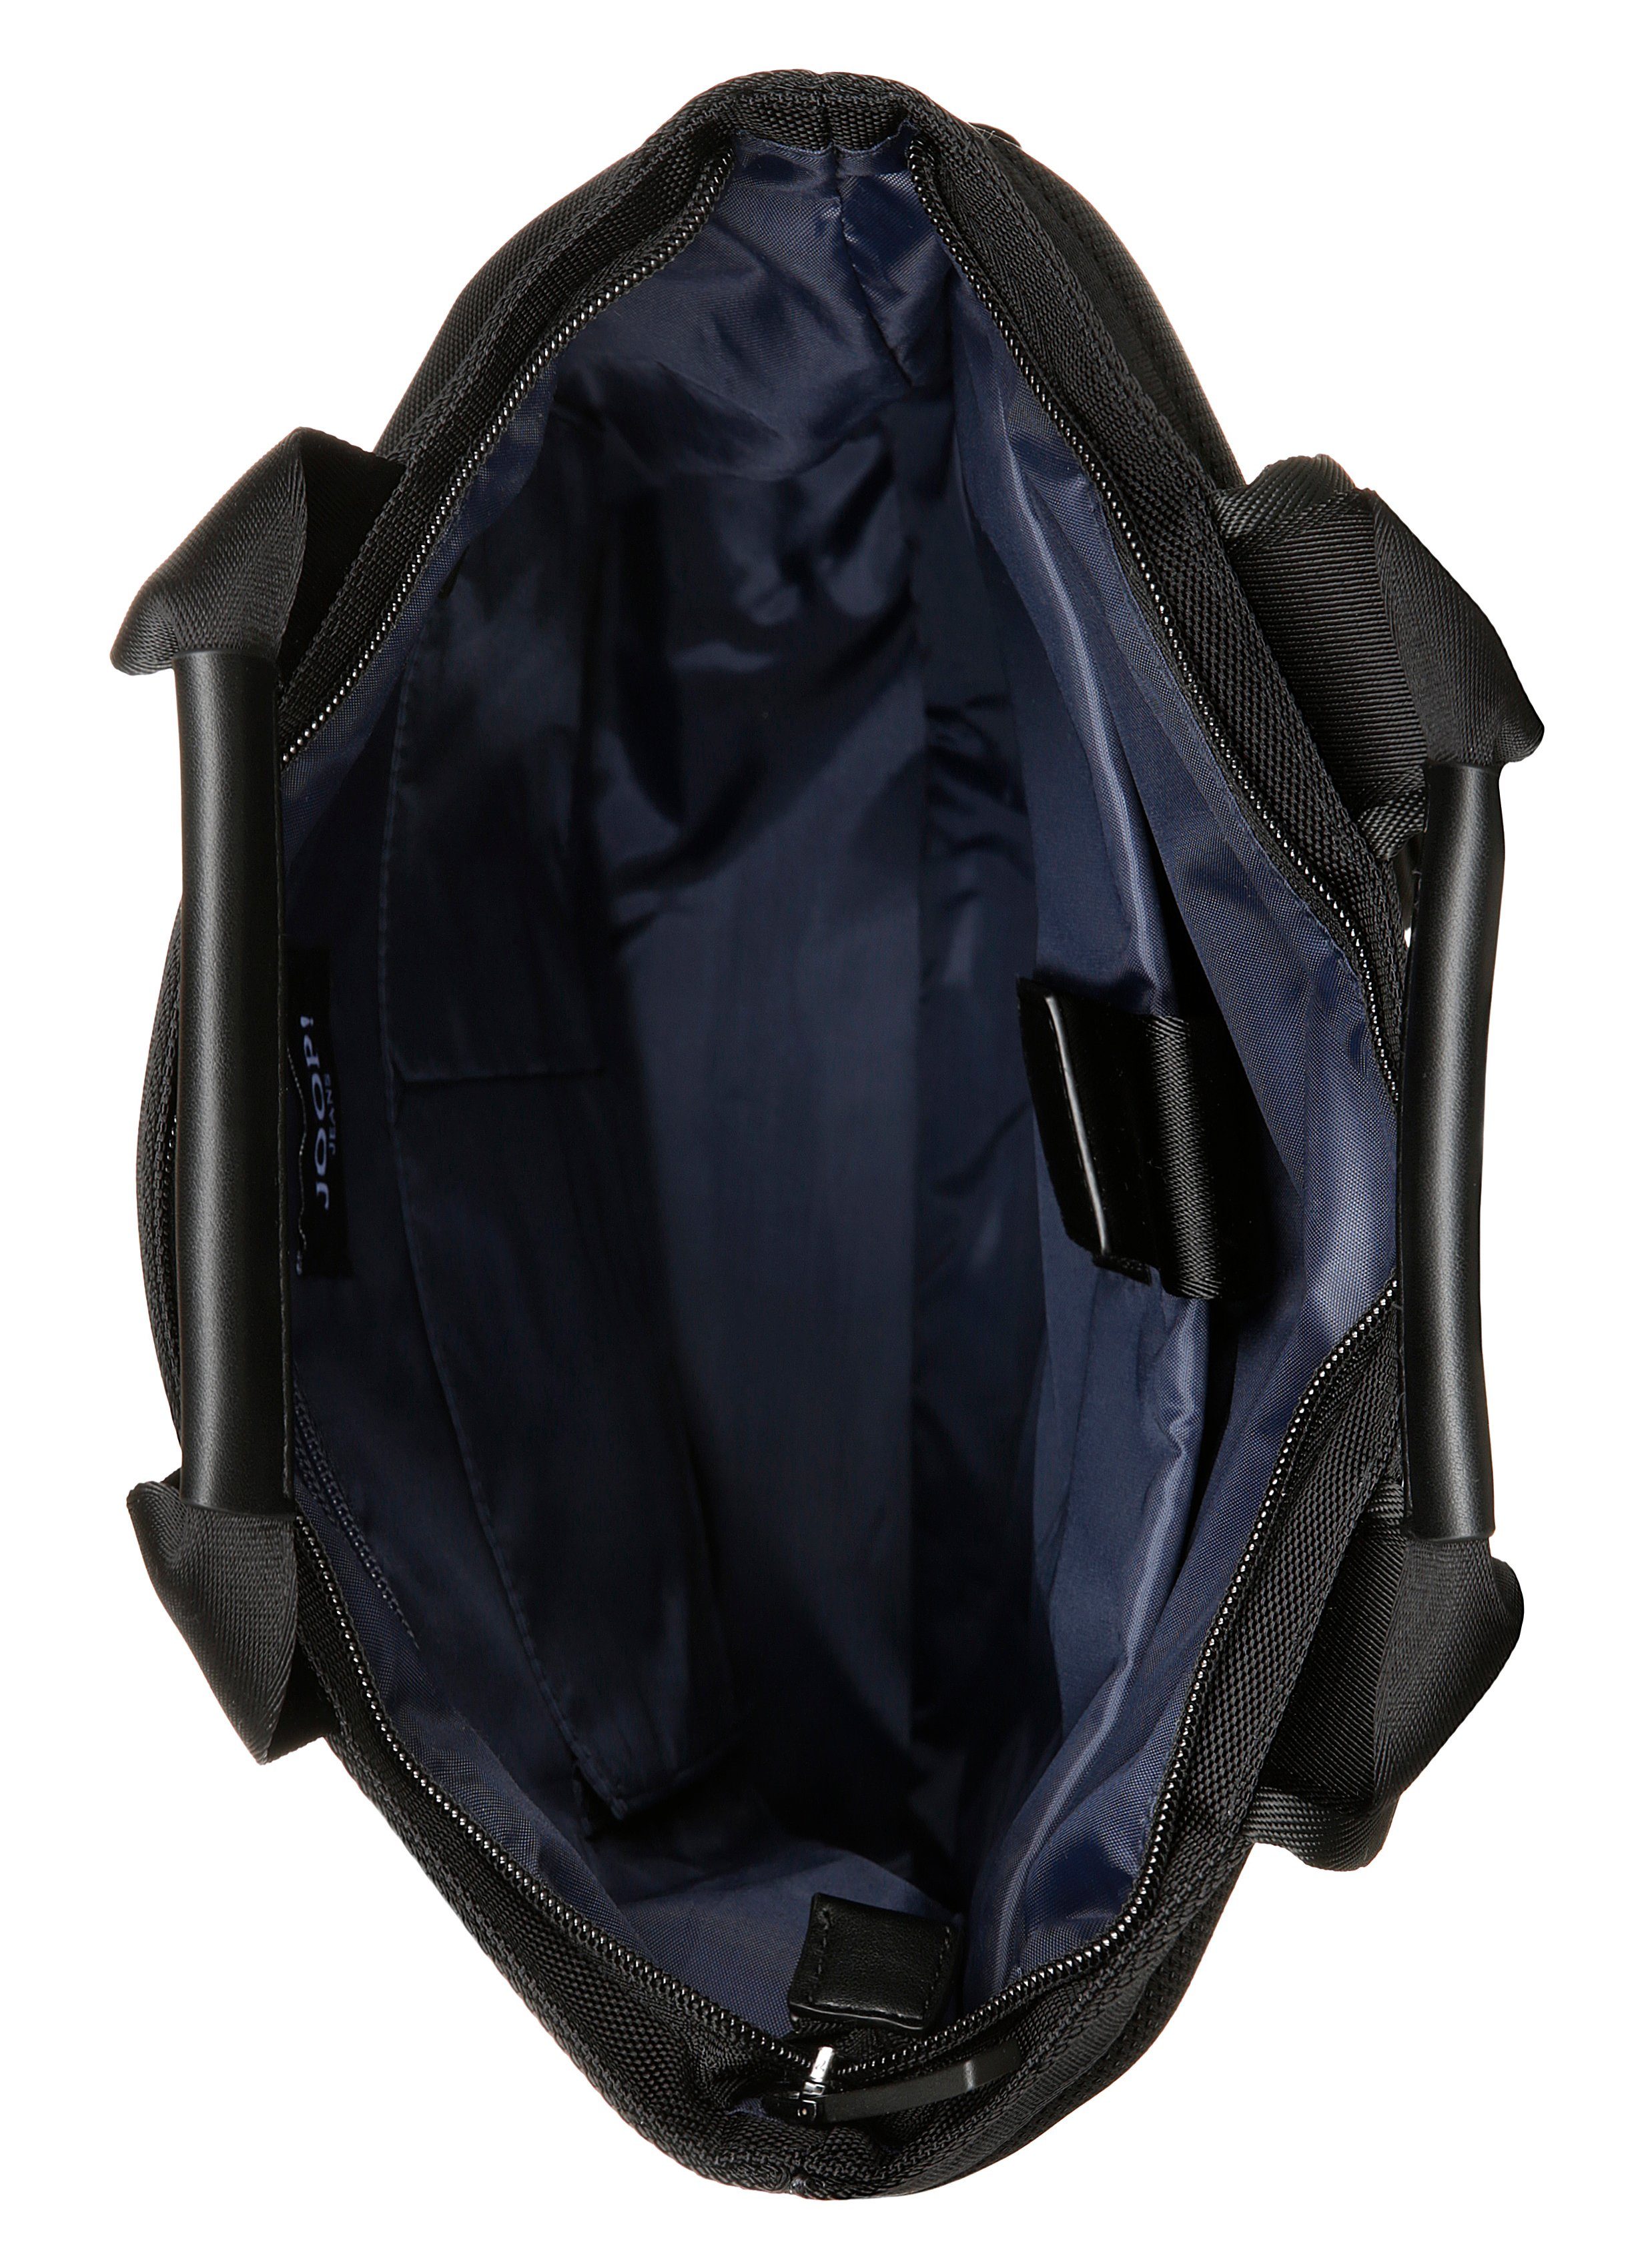 svz, backpack black Cityrucksack modica Joop Jeans mit falk Reißverschluss-Vortasche